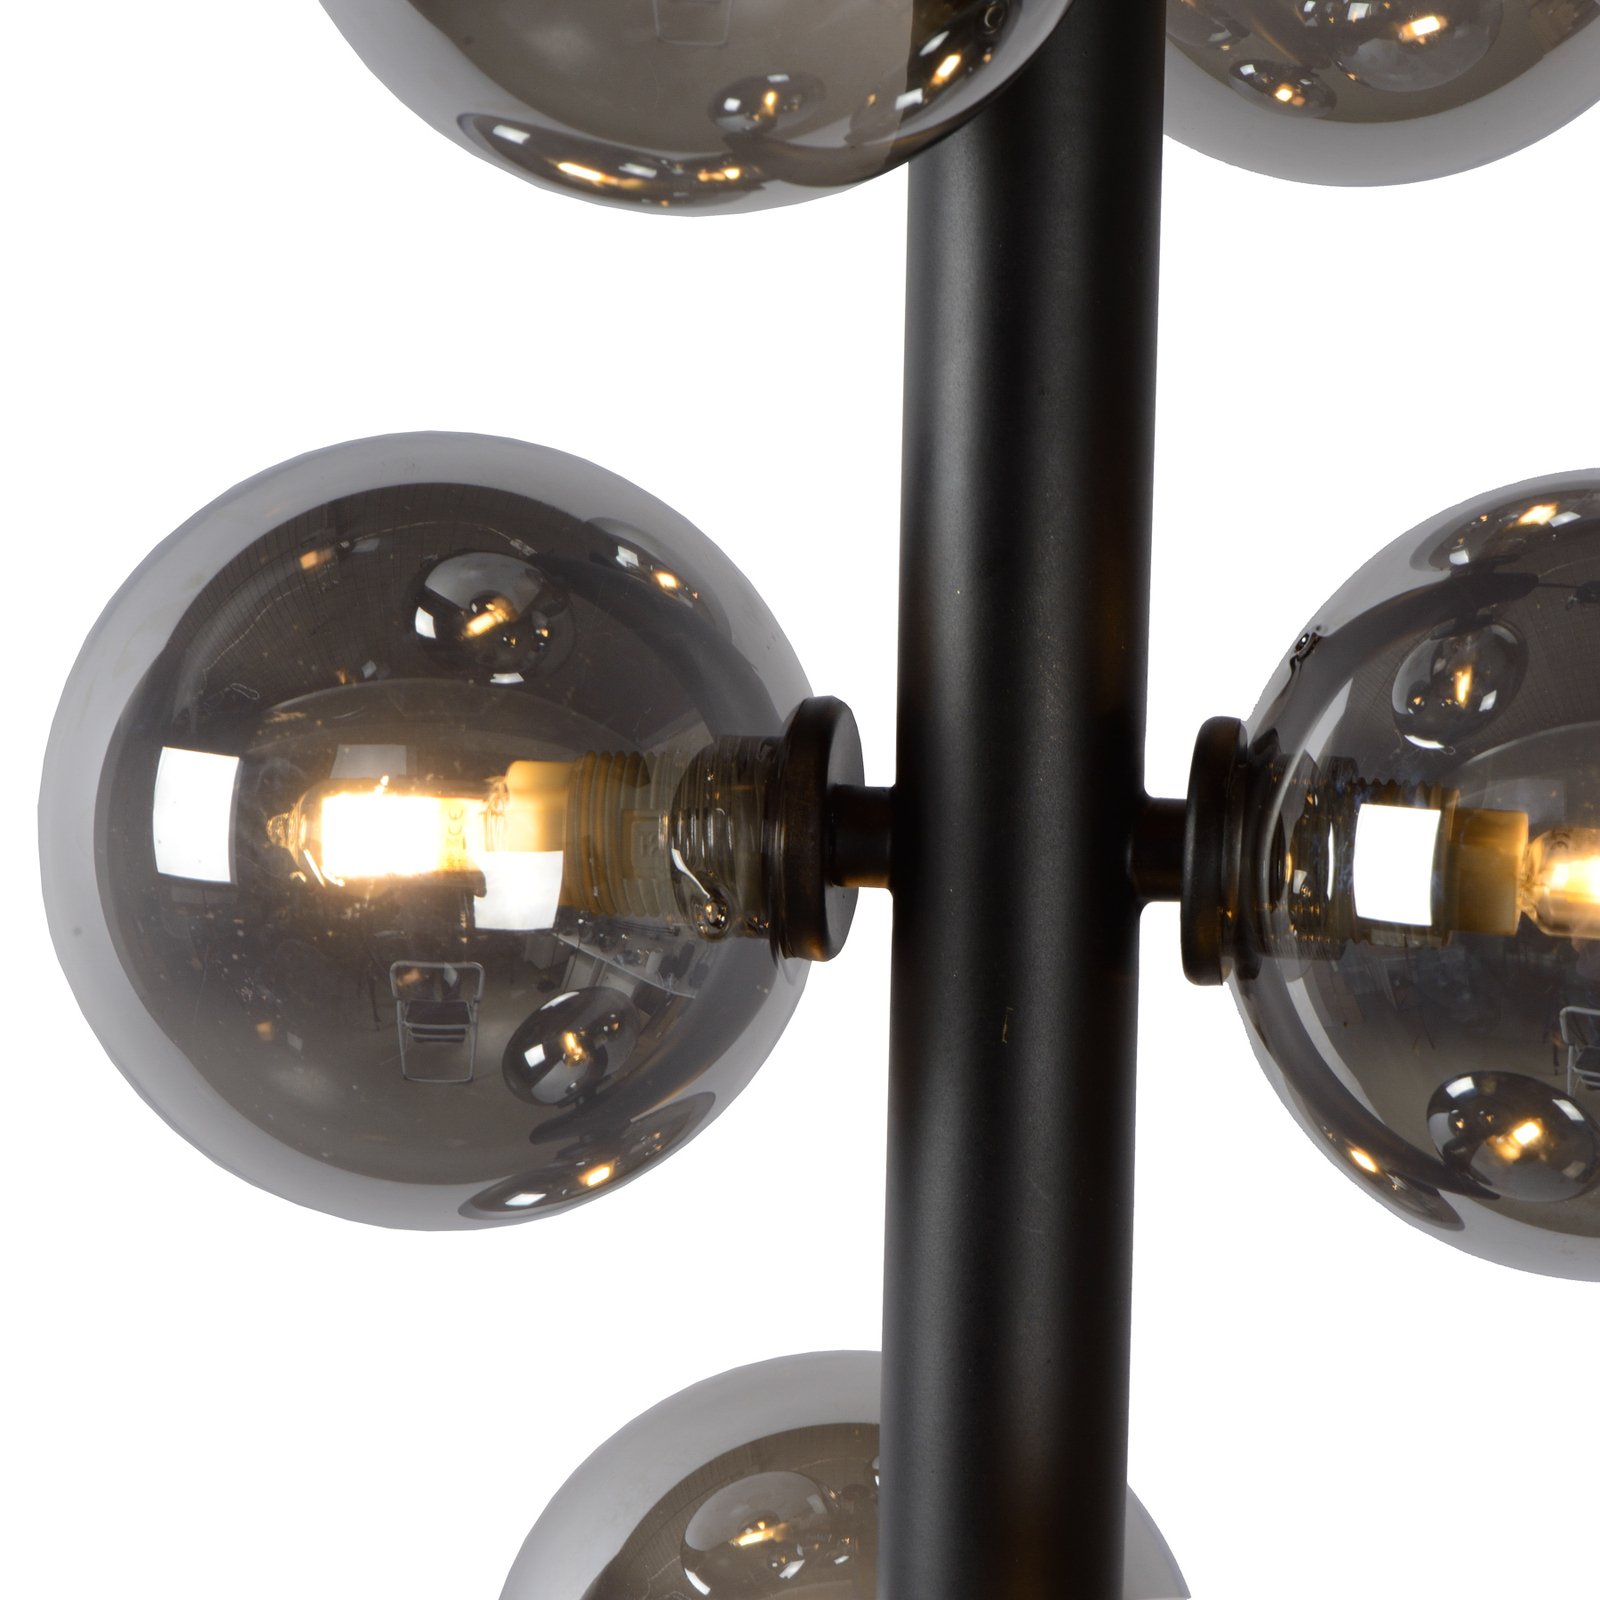 Hanglamp Tycho, 6-lamps zwart/rookgrijs